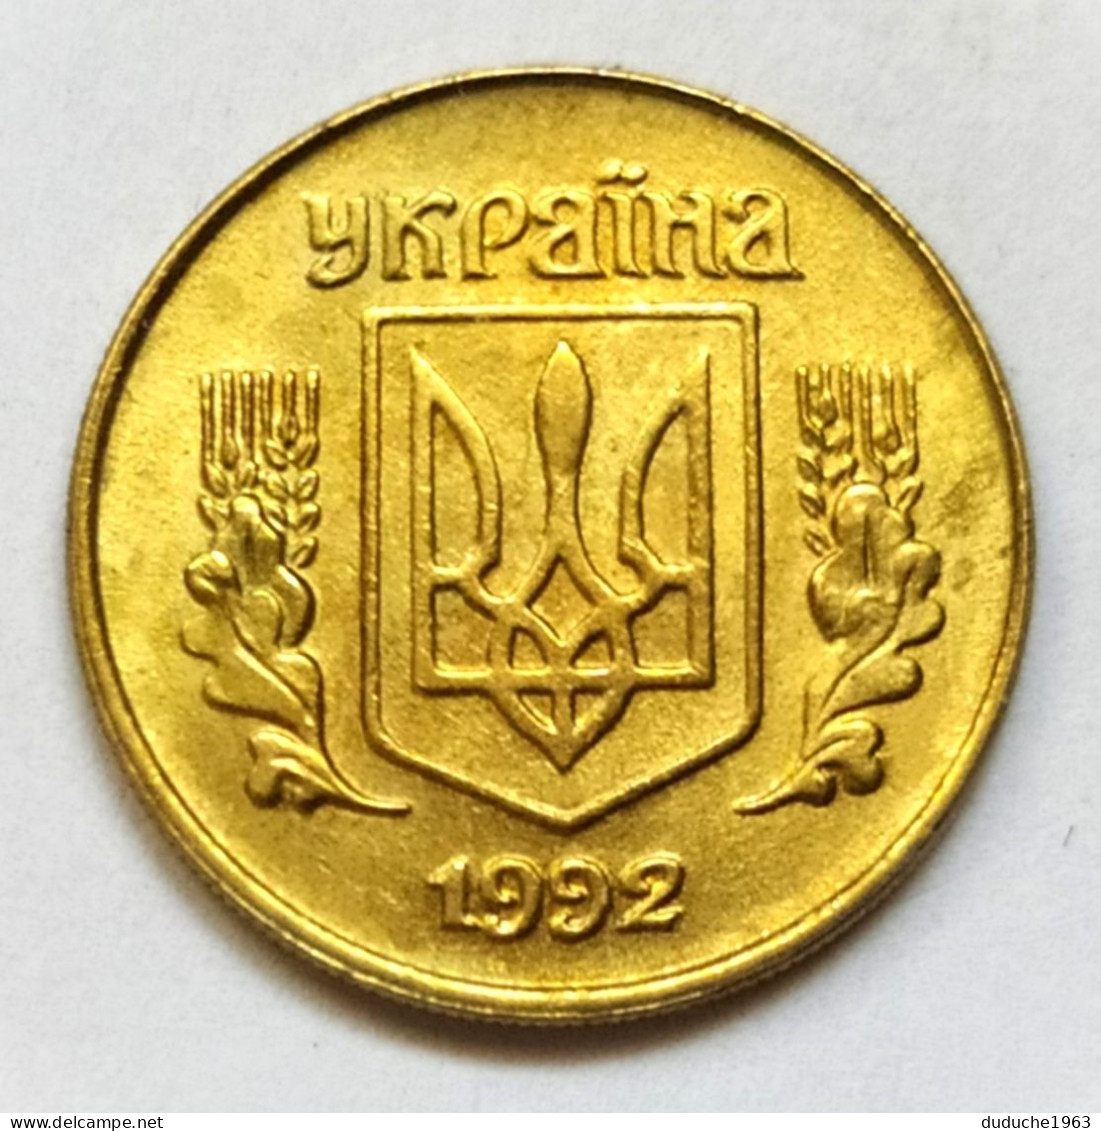 Ukraine - 10 Kopiyok 1992 - Ukraine